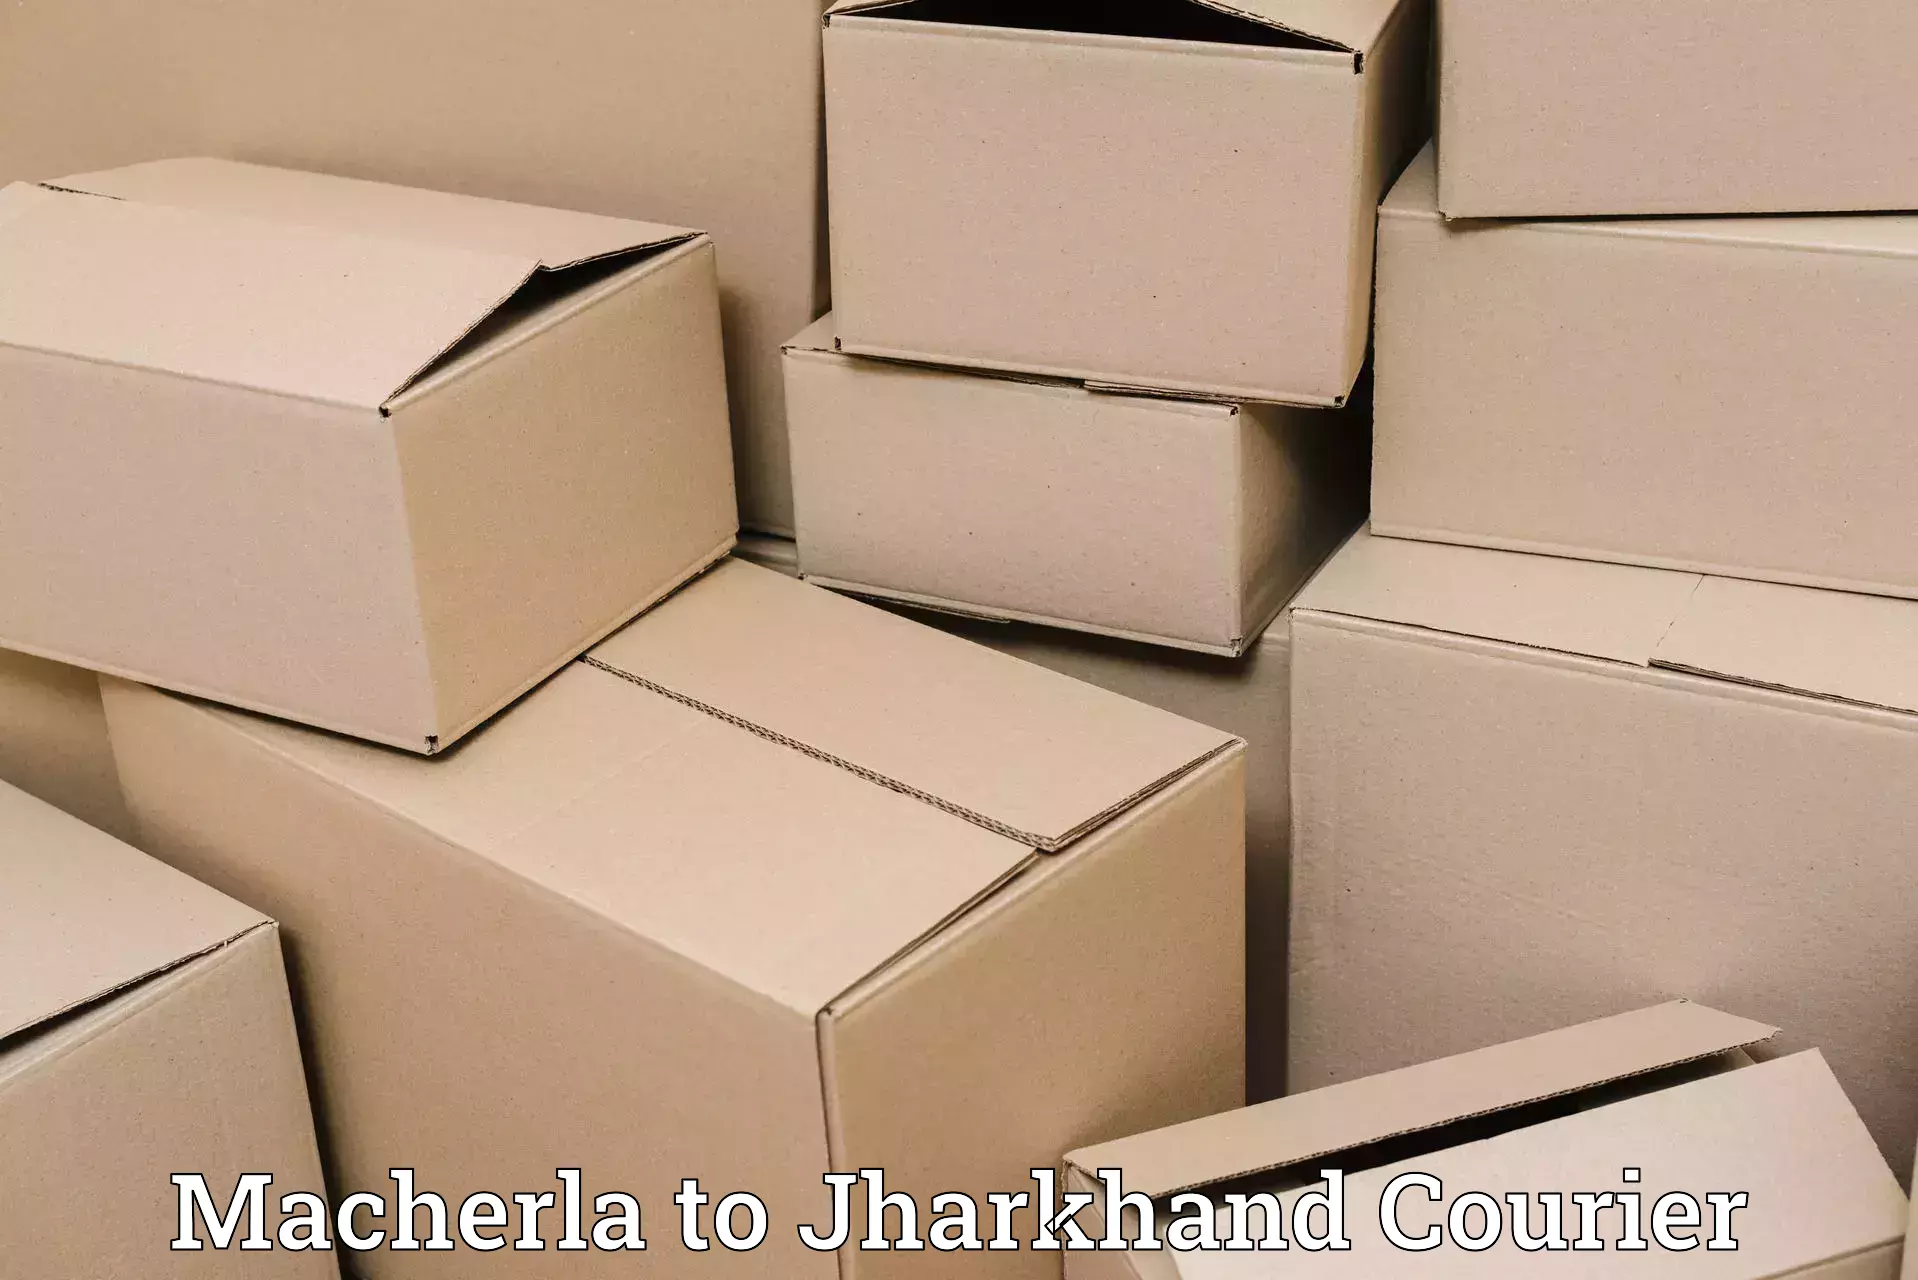 High-speed parcel service Macherla to Nirsa